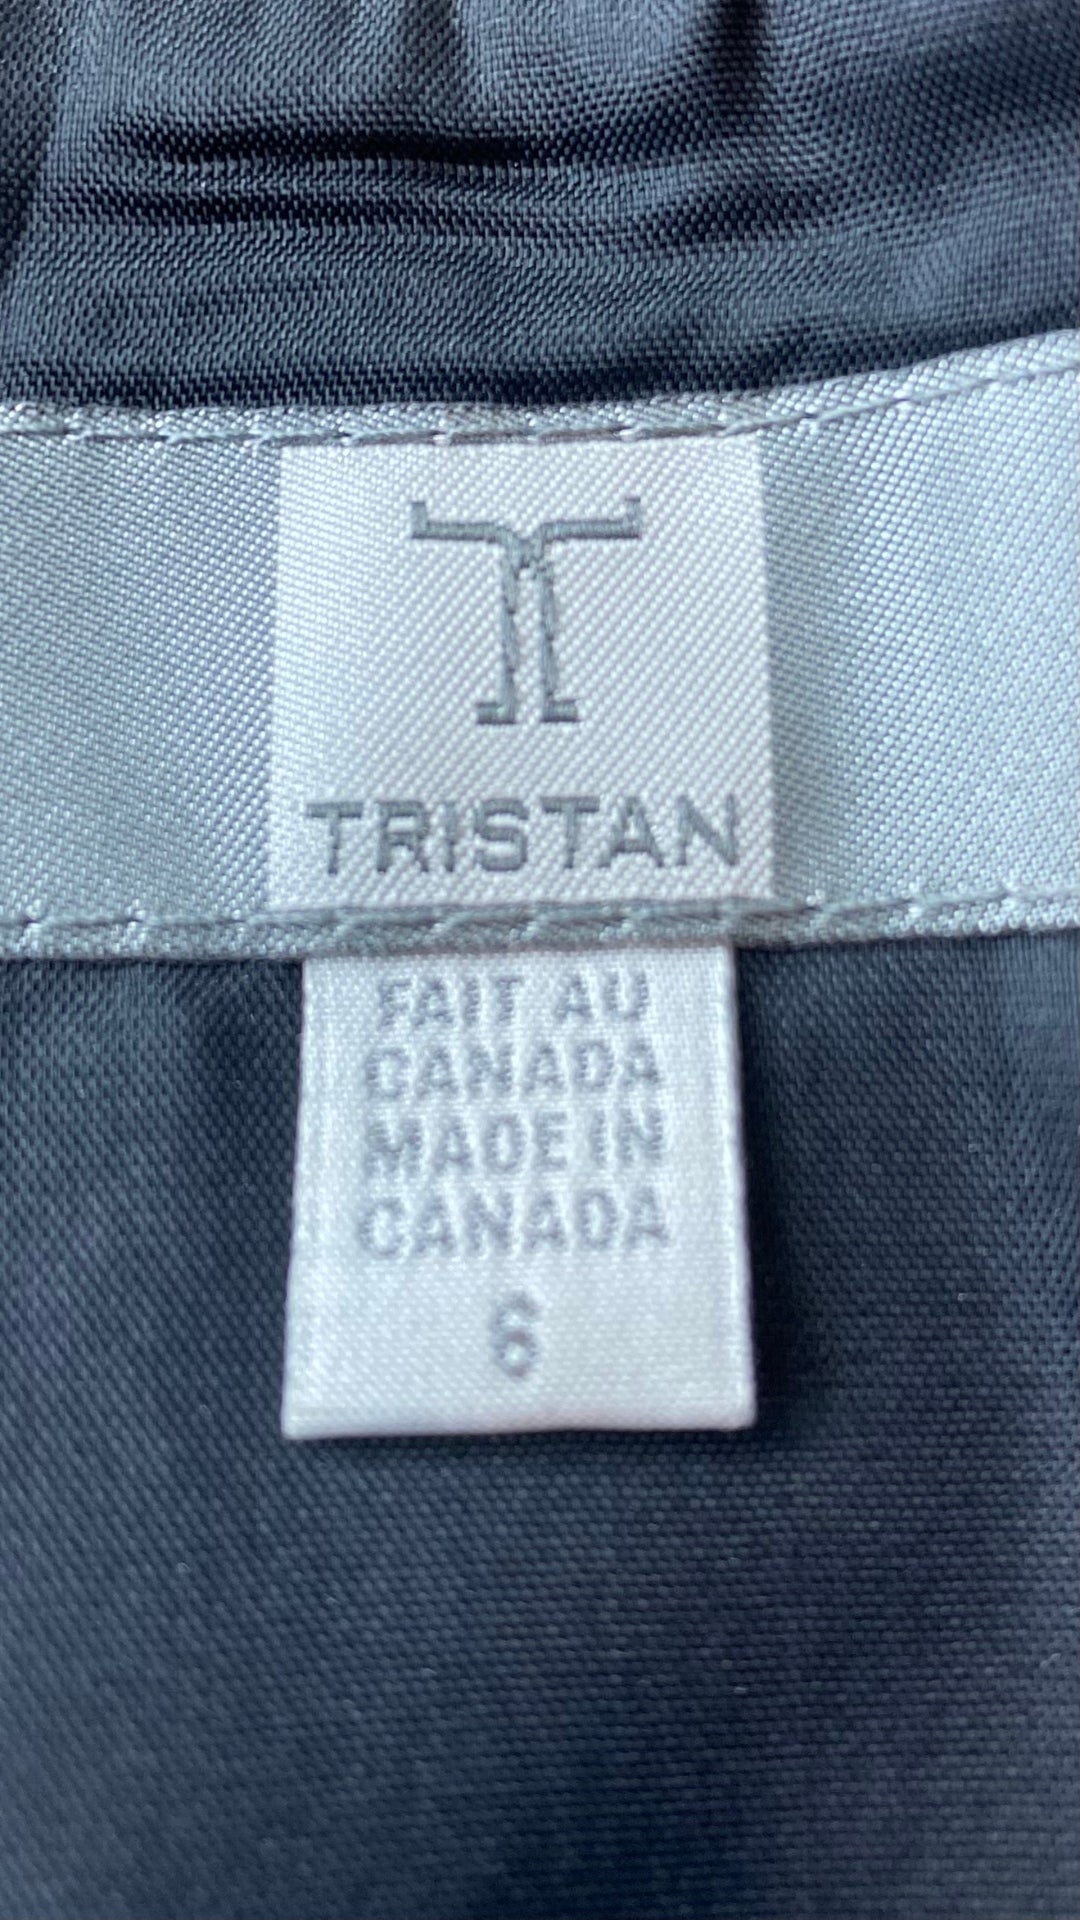 Jupe noire chic texturée Tristan, taille 6. Vue de l'étiquette de marque et taille.